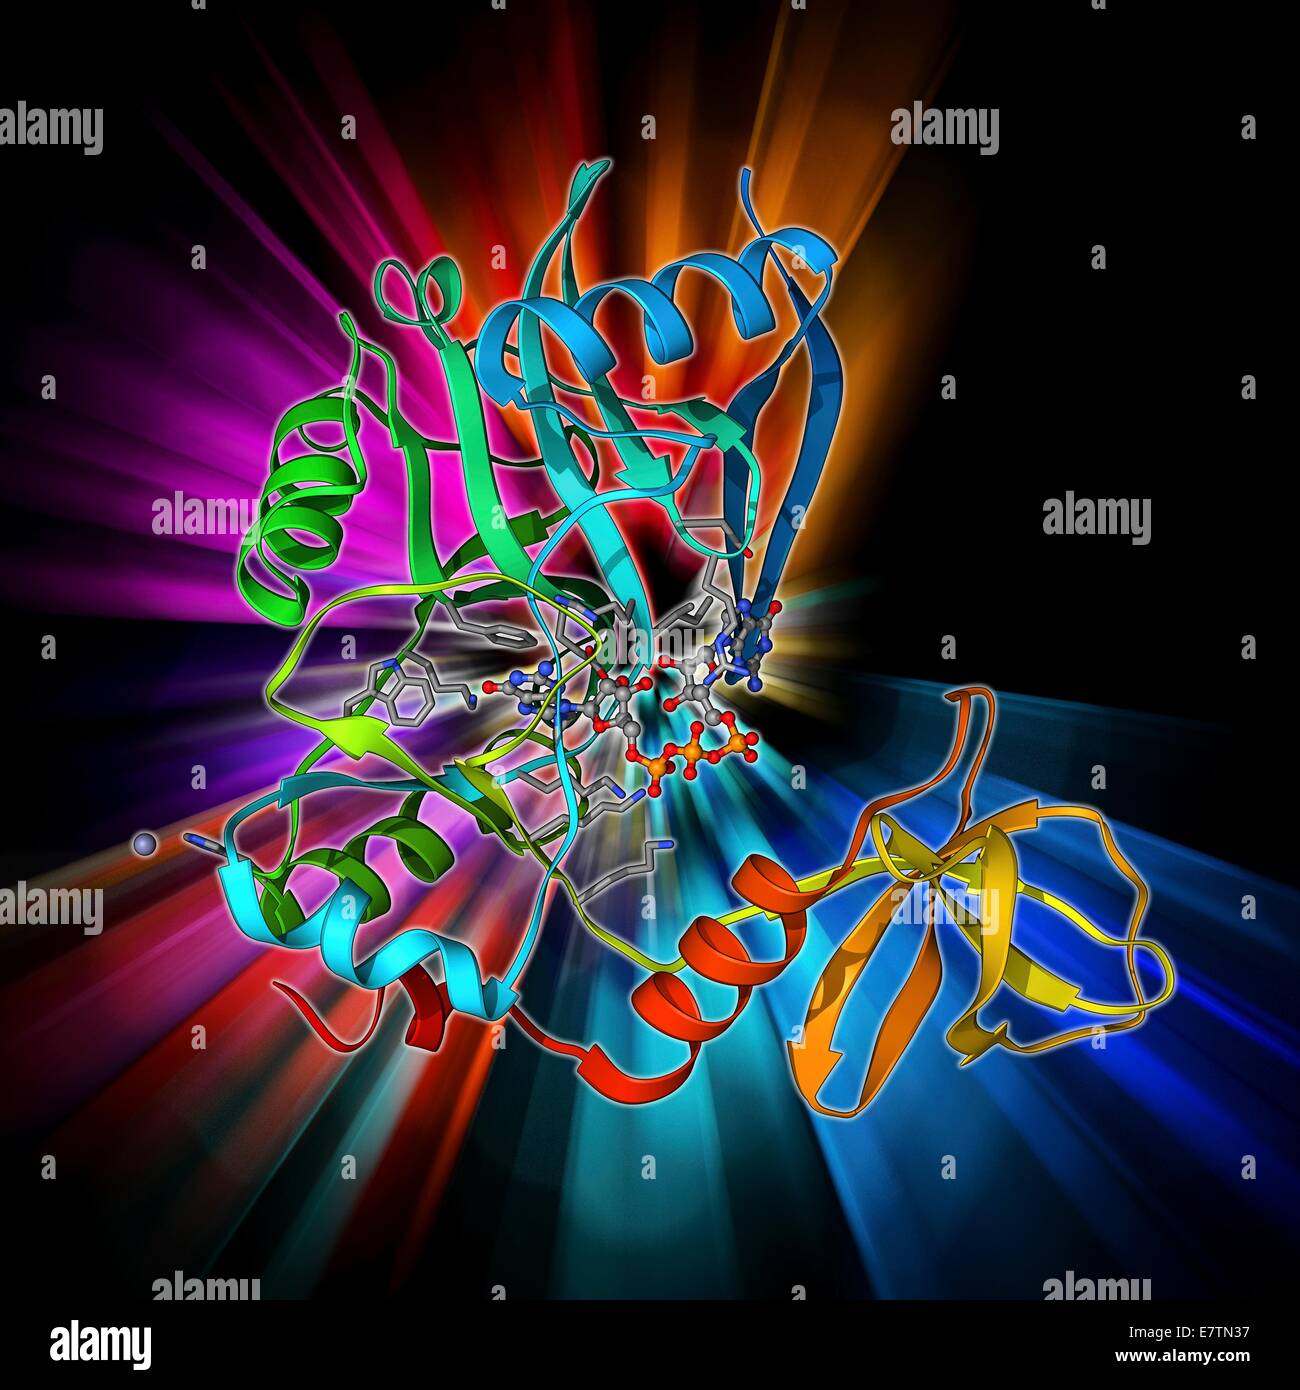 Plafonnement de l'Arnm de l'enzyme. Le modèle moléculaire de l'ARNM de l'ARNM de l'enzyme plafonnement complexés avec un plafond guanylyltransférase analogique. Banque D'Images